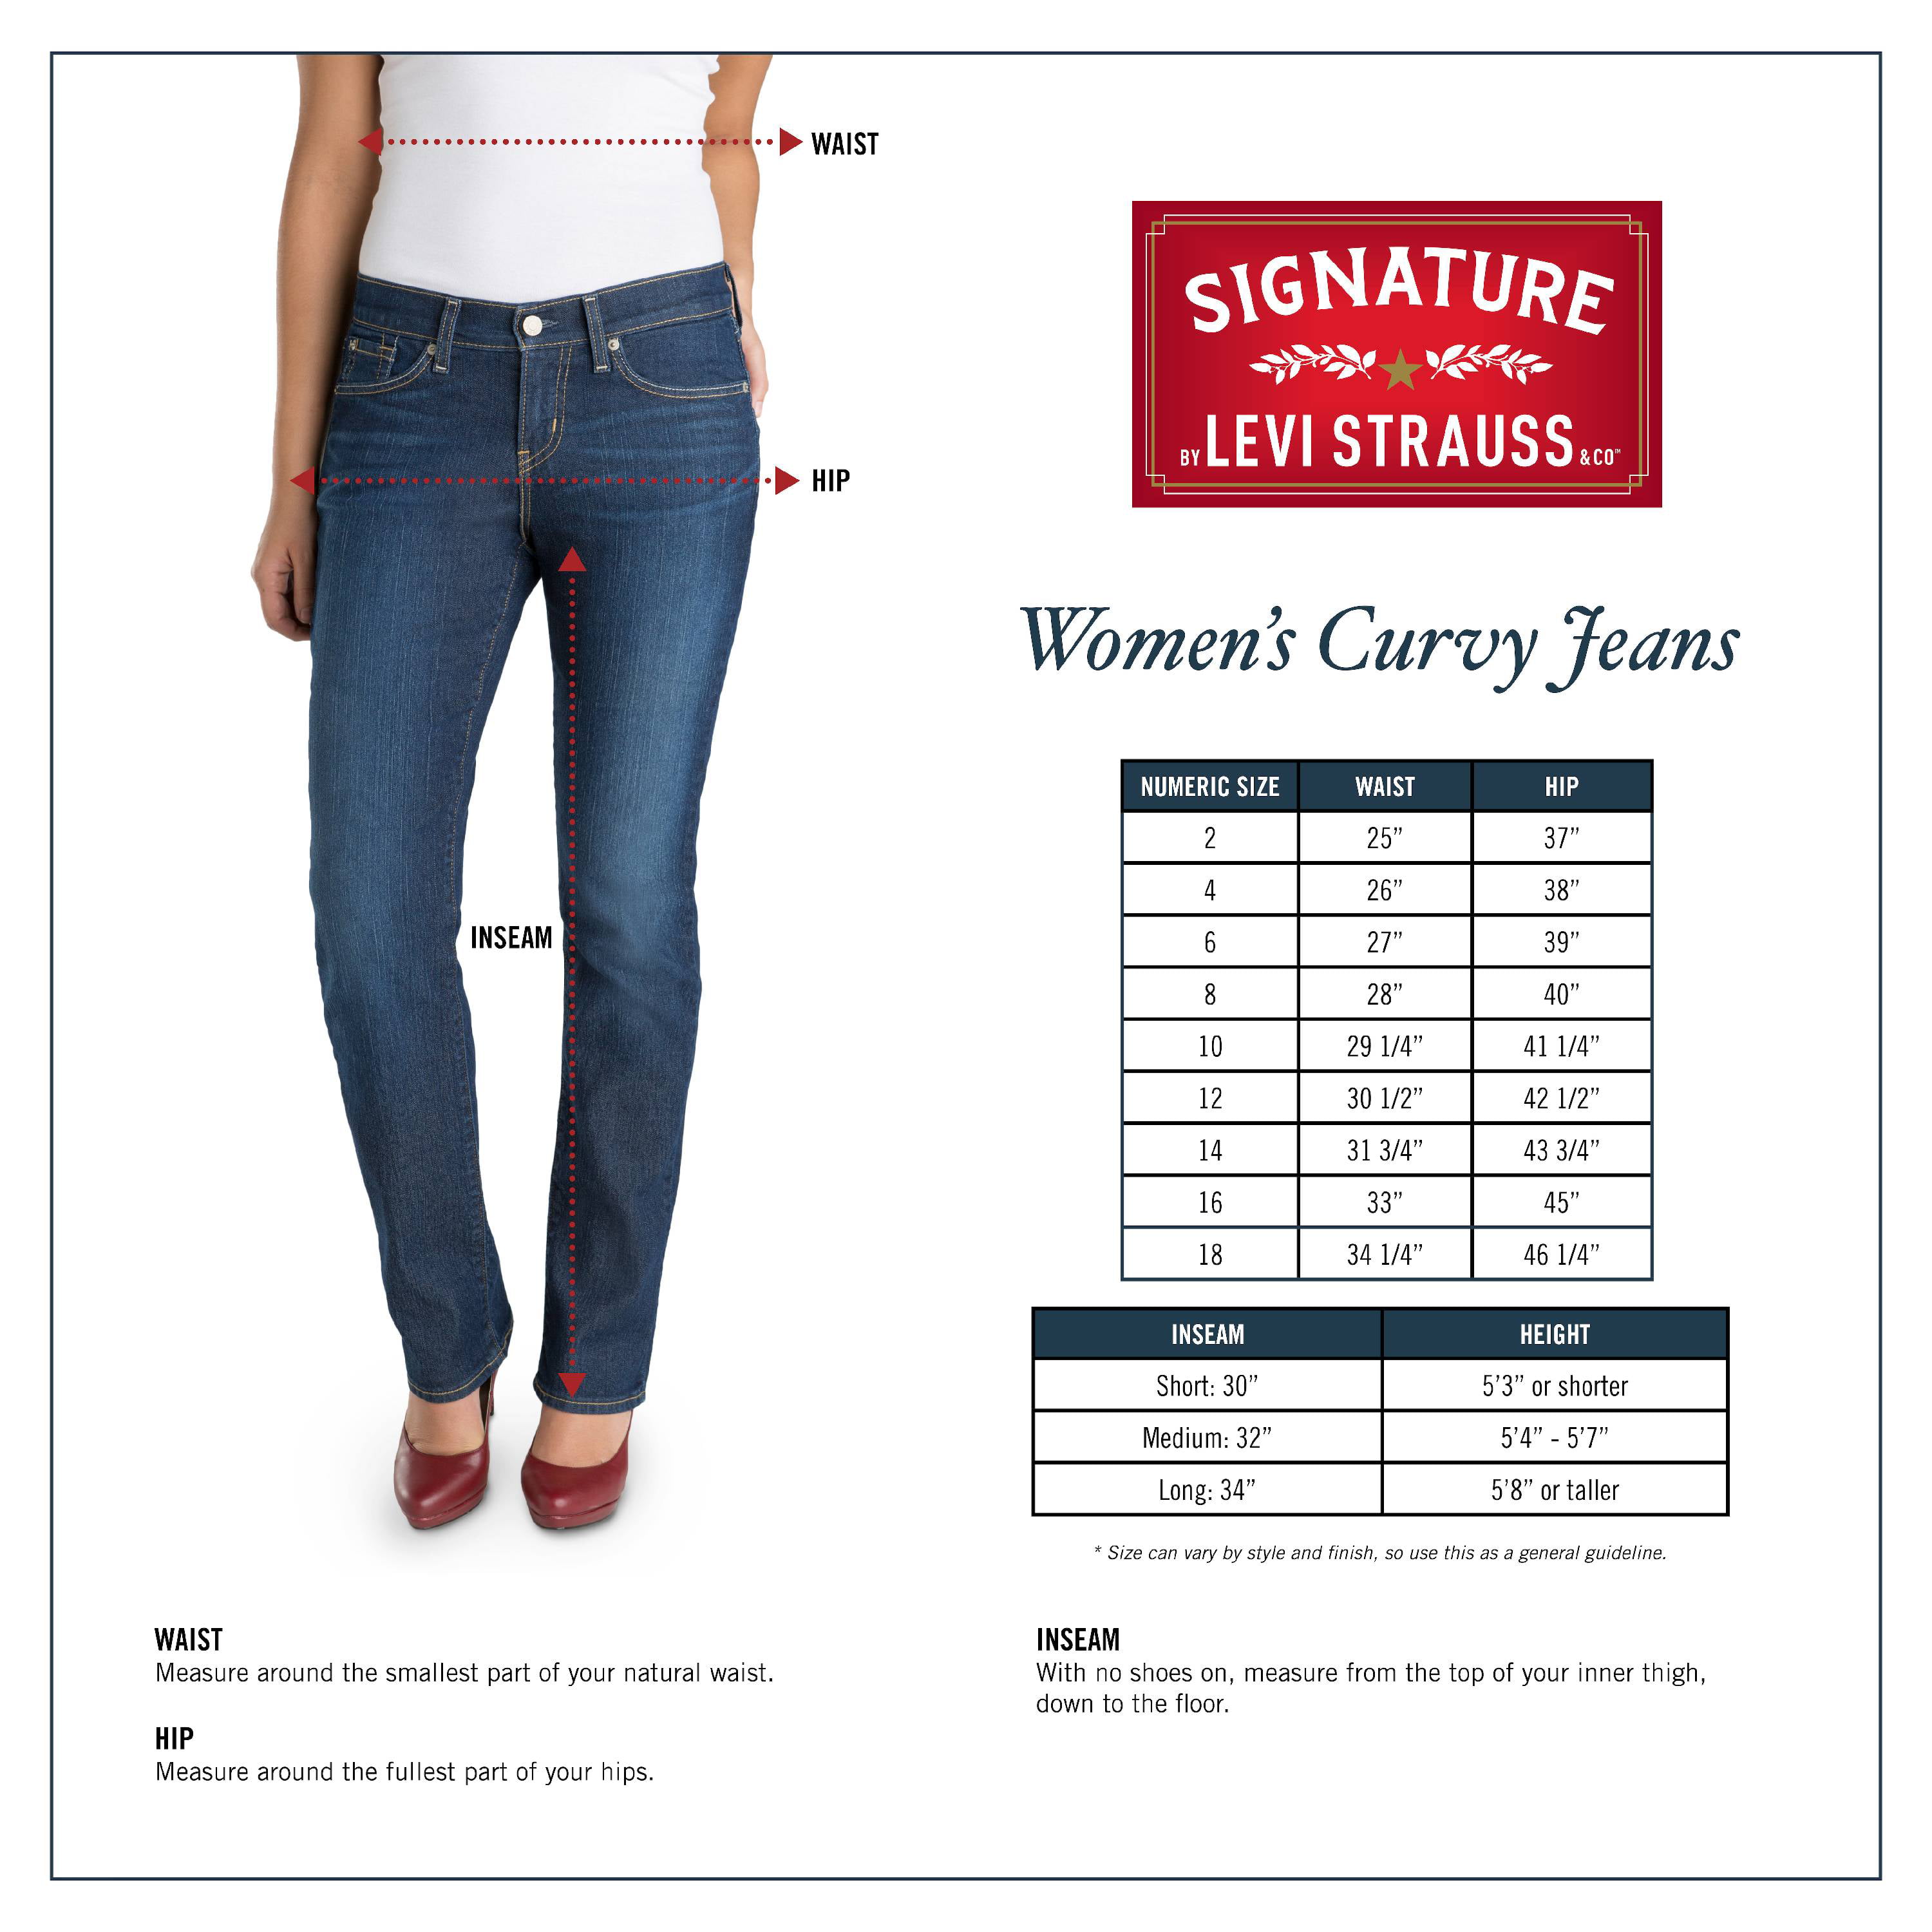 Vintage Levis Jeans 505 Orange Tab Jeans 33x29 Levis 505 - Etsy Canada |  Vintage levis jeans, Levi, Levis jeans